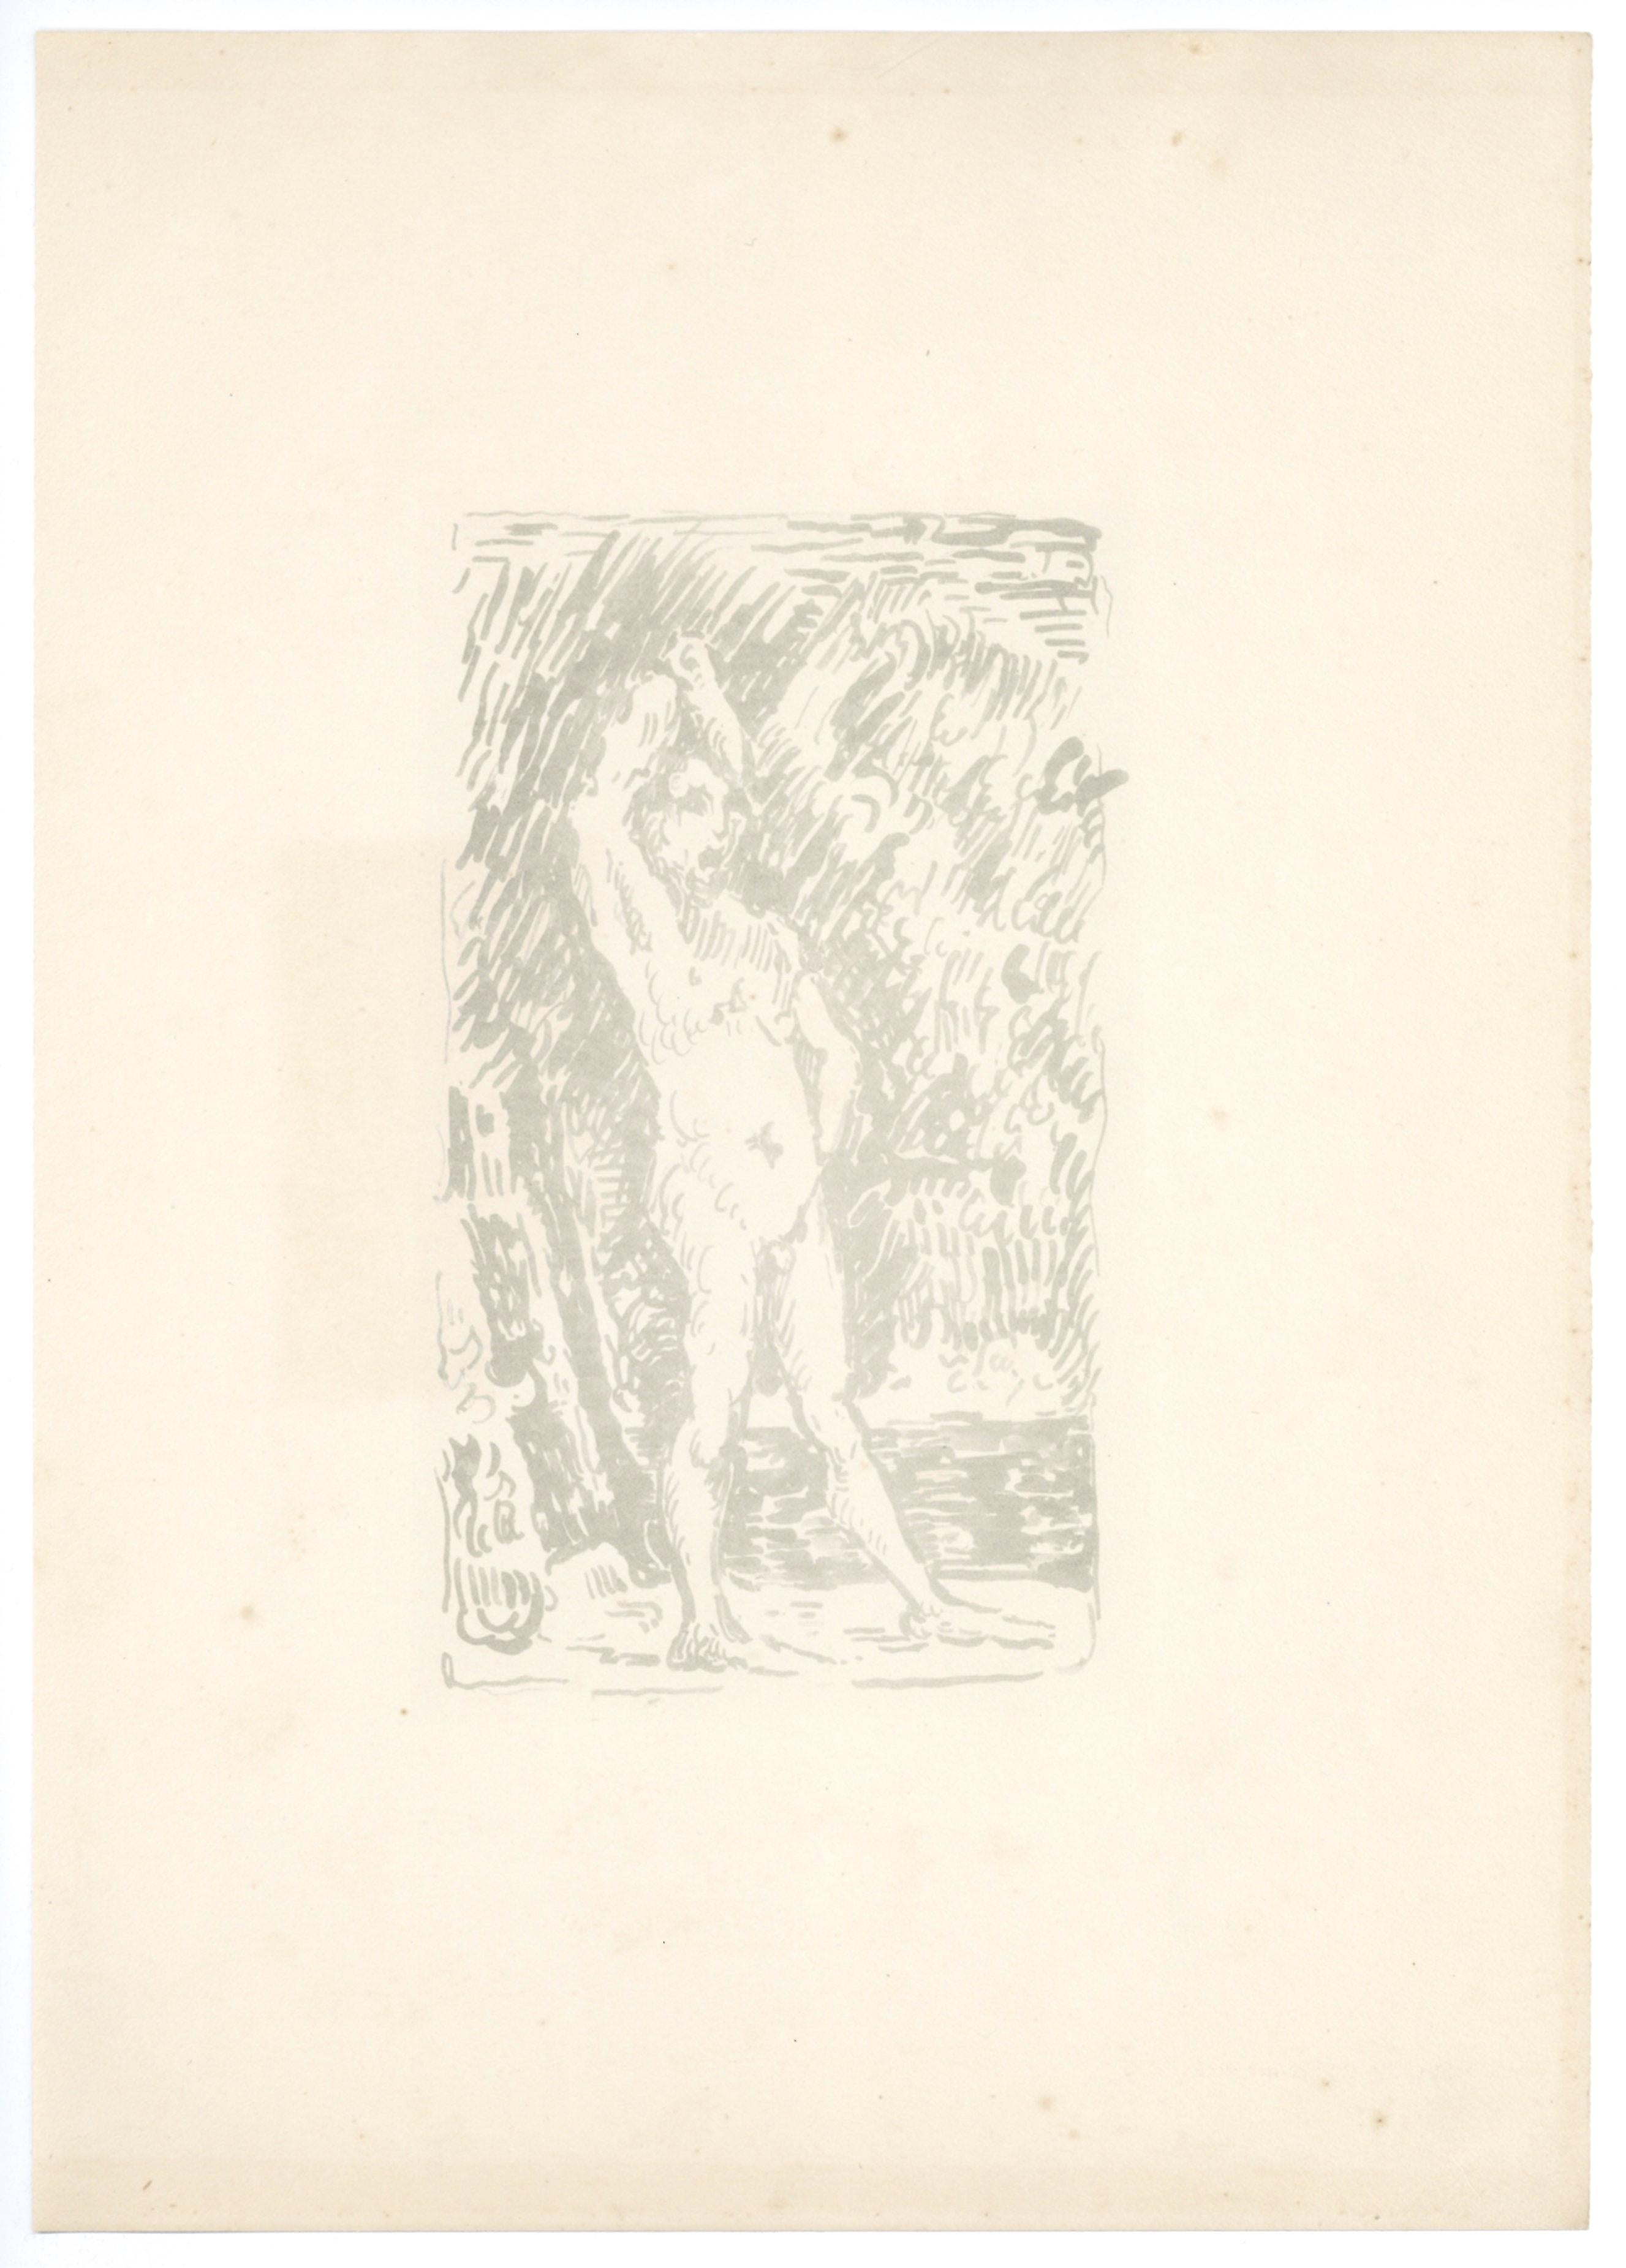 Medium: Lithographie (nach der Zeichnung). Diese Komposition wurde von Paul Signac als Hommage an Paul Cezanne ausgeführt, 1914 gedruckt und in Paris von Bernheim-Jeune für den seltenen Band "Cezanne" veröffentlicht. Dieser Druck ist einer von 400